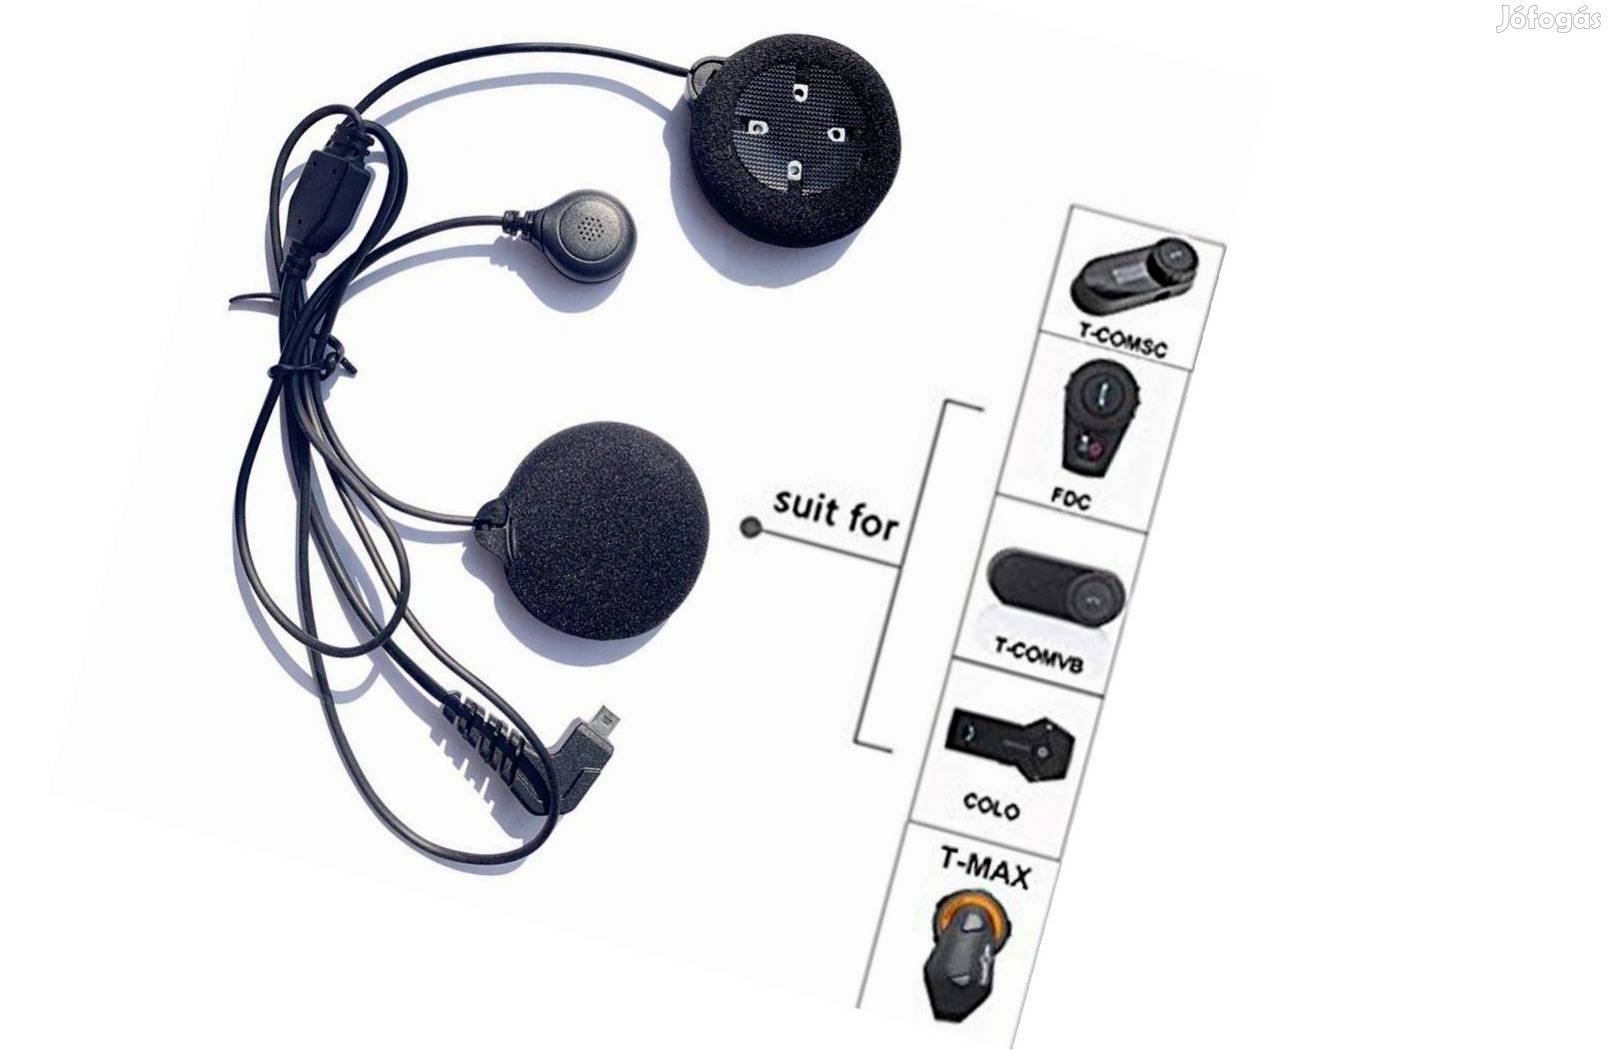 Puhaszárú mikrofonos headset Freedconn sisakbeszélőhöz Tmax Colo Tcom